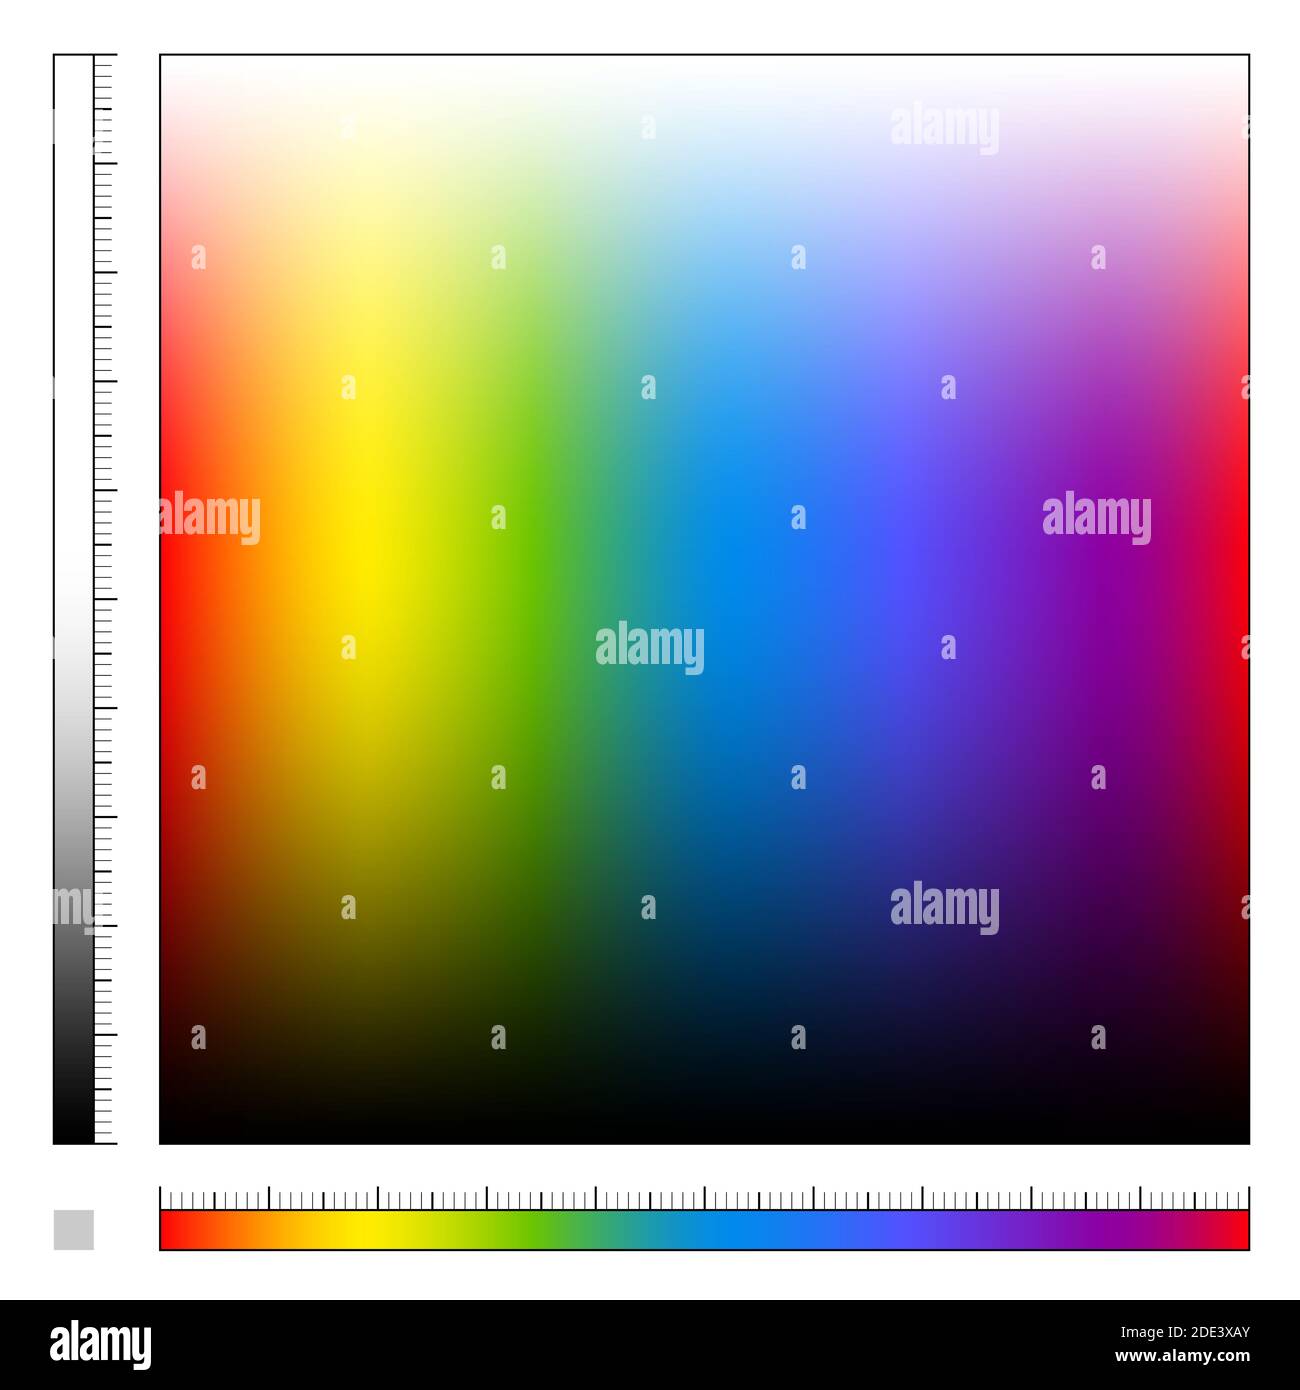 Farbfeld mit unterschiedlicher Sättigung und Regenbogenfarbverlauf, Spektrum des sichtbaren Lichts, alle Farben des Regenbogens von hell bis dunkel. Stockfoto